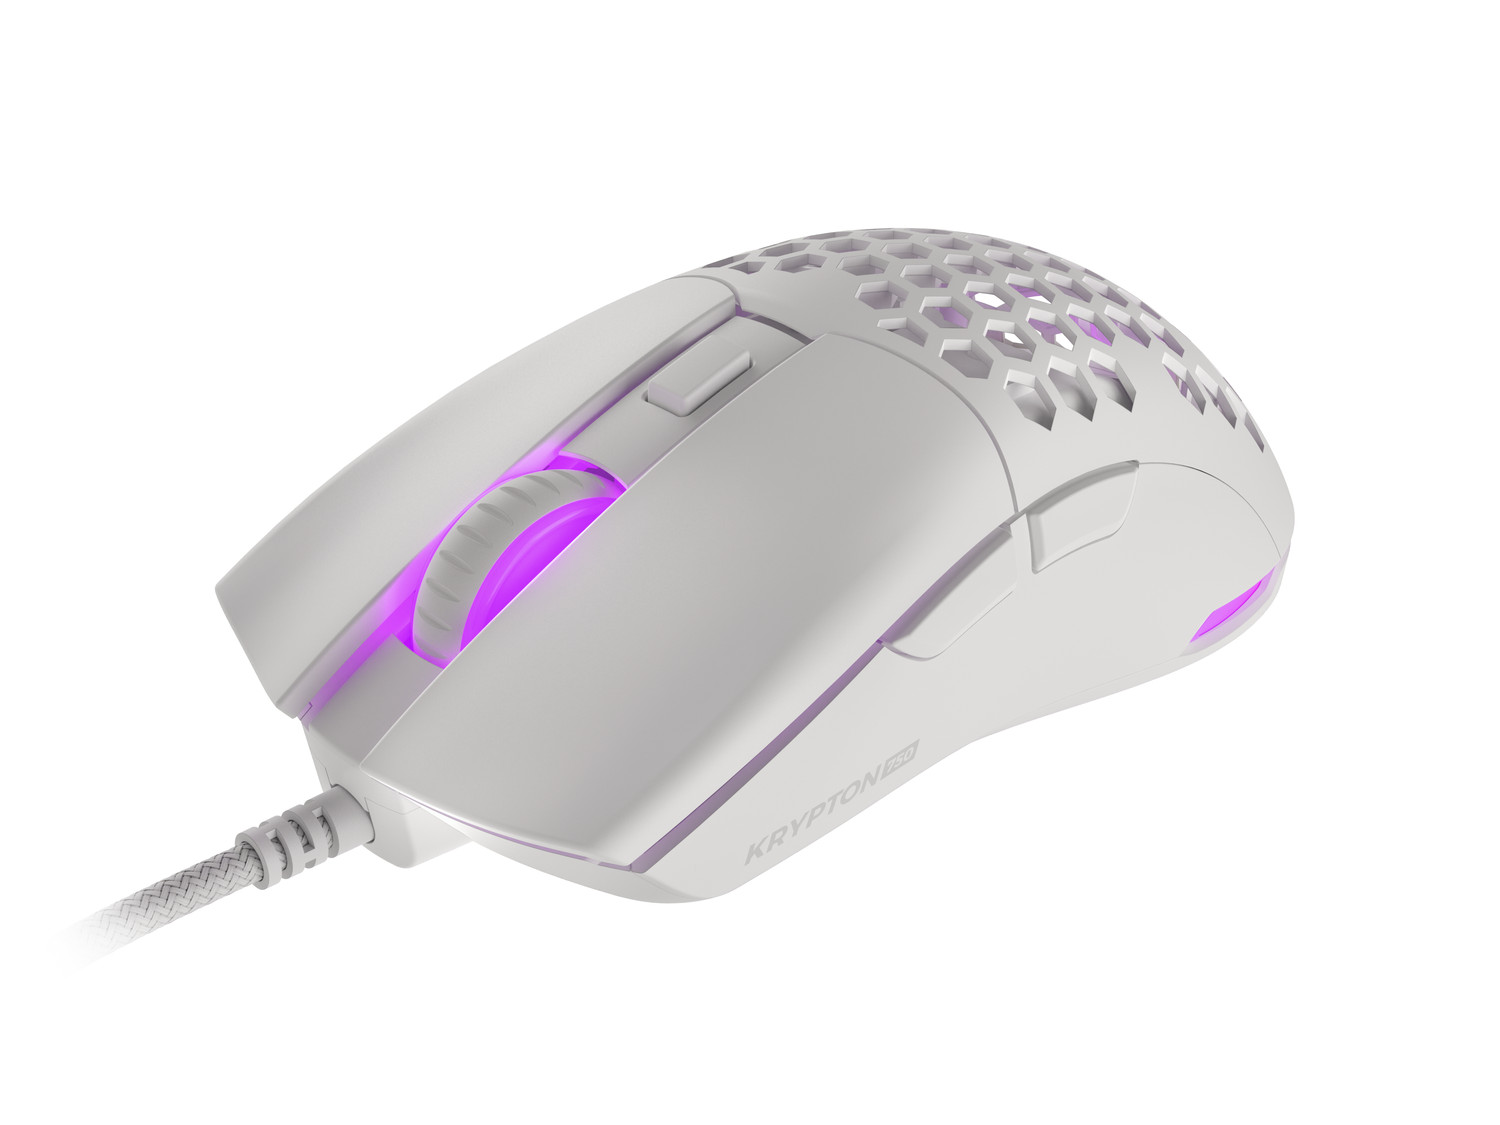 Obrázek Genesis herní optická myš KRYPTON 750/RGB/8000 DPI/Herní/Optická/8 000 DPI/Drátová USB/Bílá